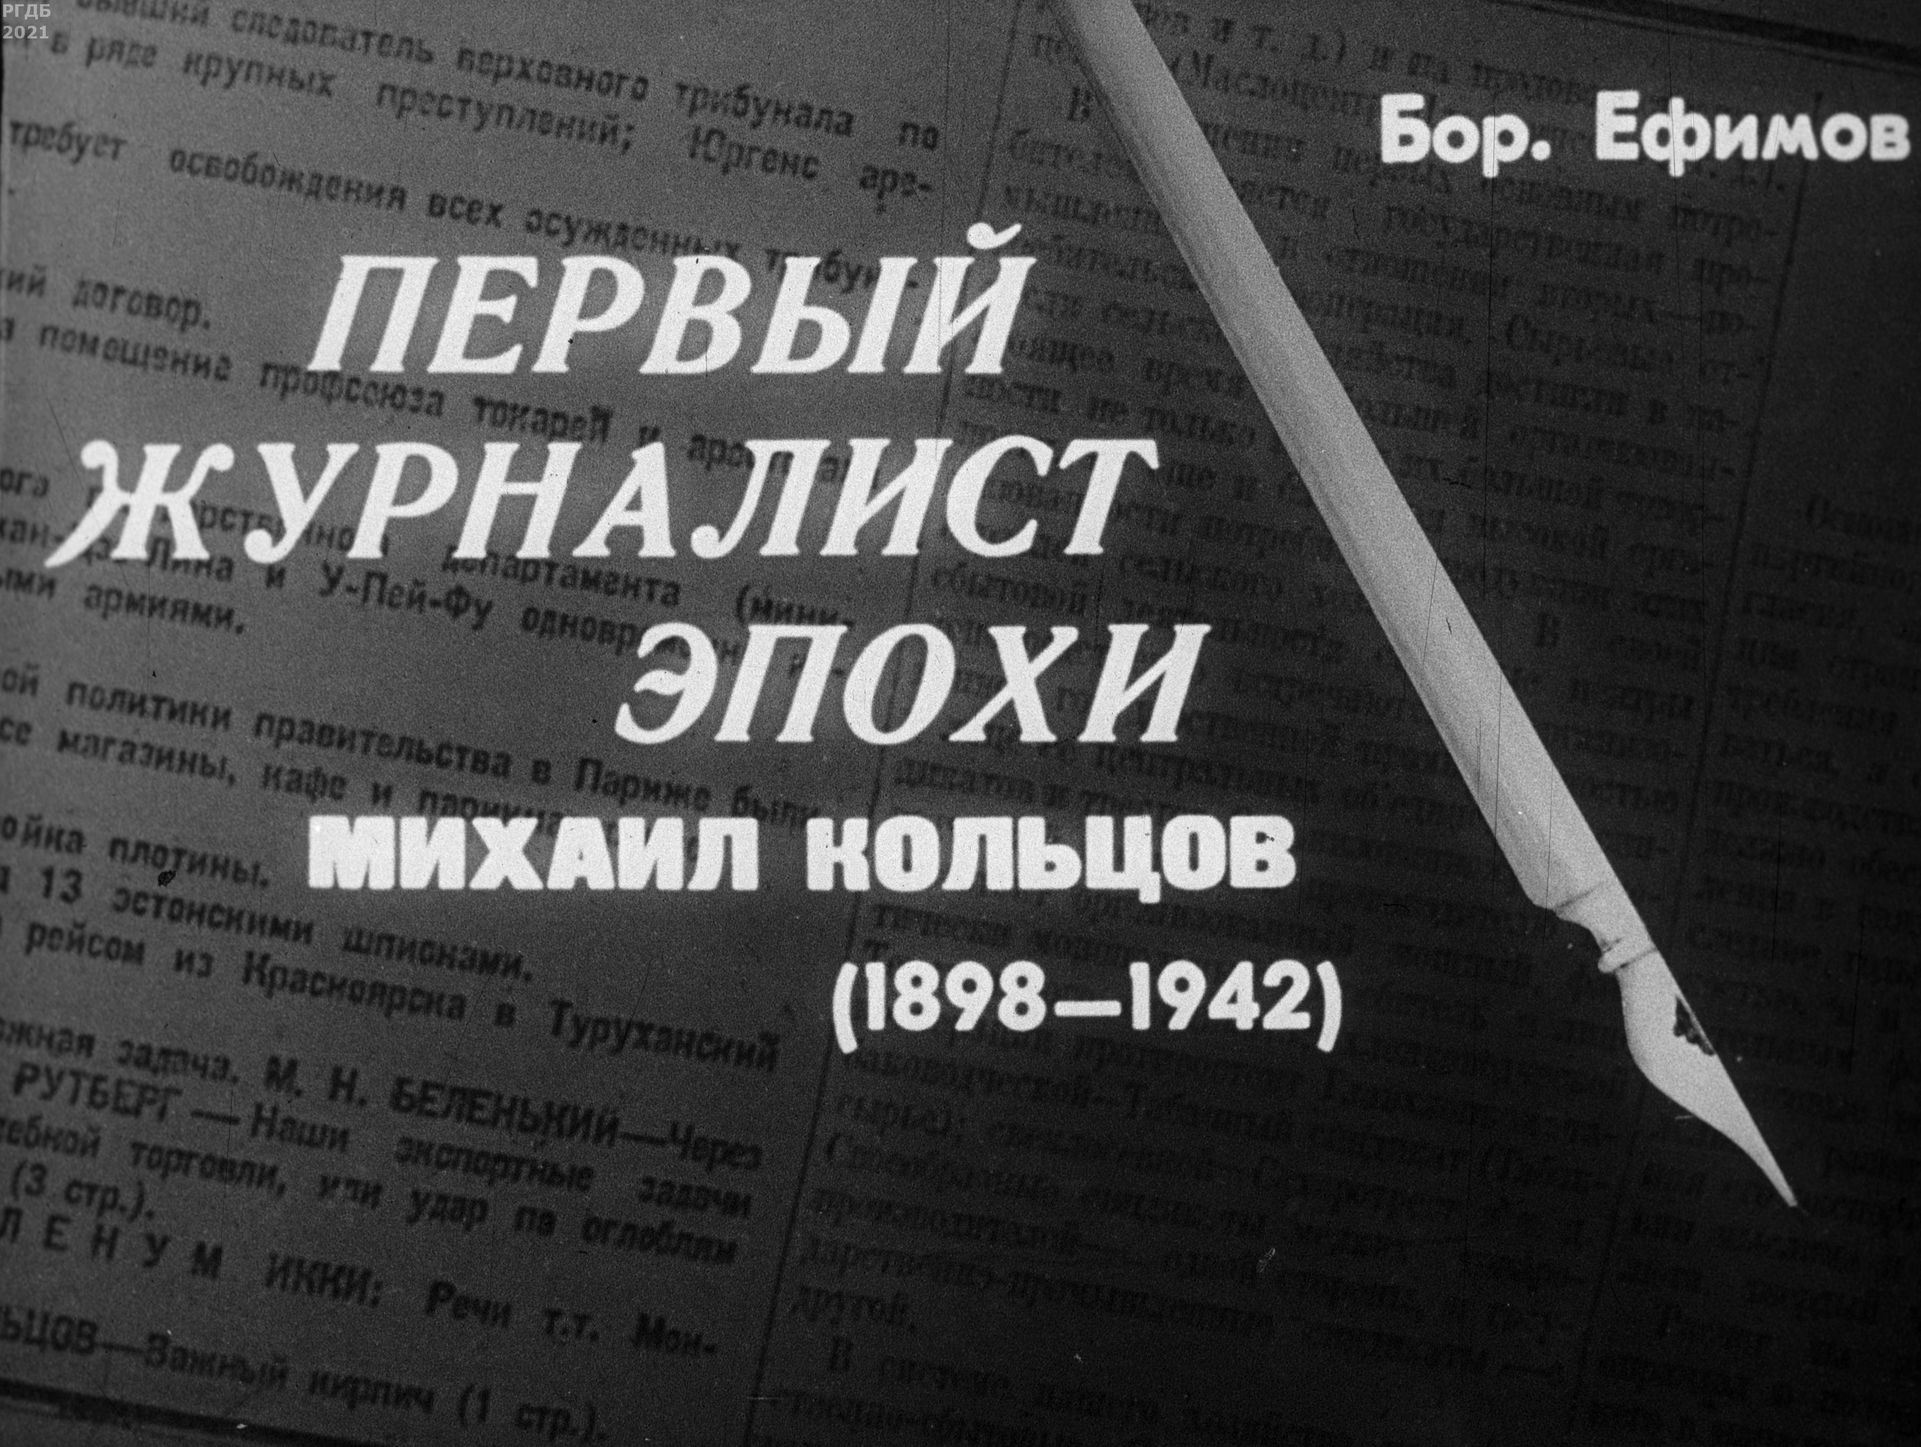 Ефимов Борис Ефимович - Первый журналист эпохи Михаил Кольцов - 1969